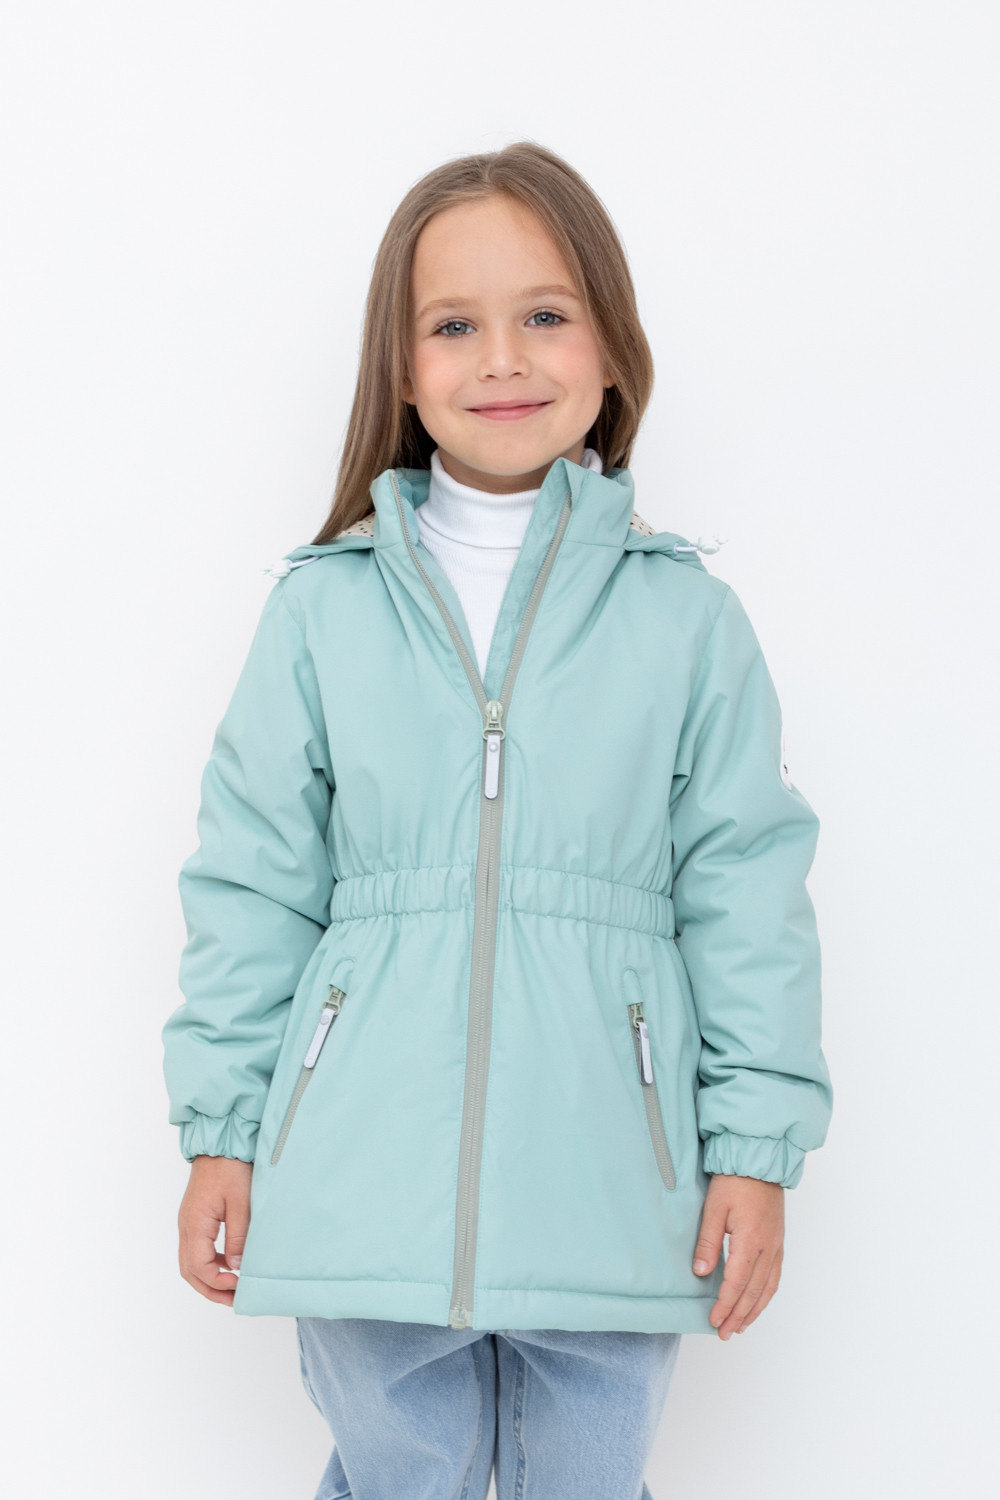 Куртка детская Crockid 1G JKT 024 4 1, голубой прибой, 98